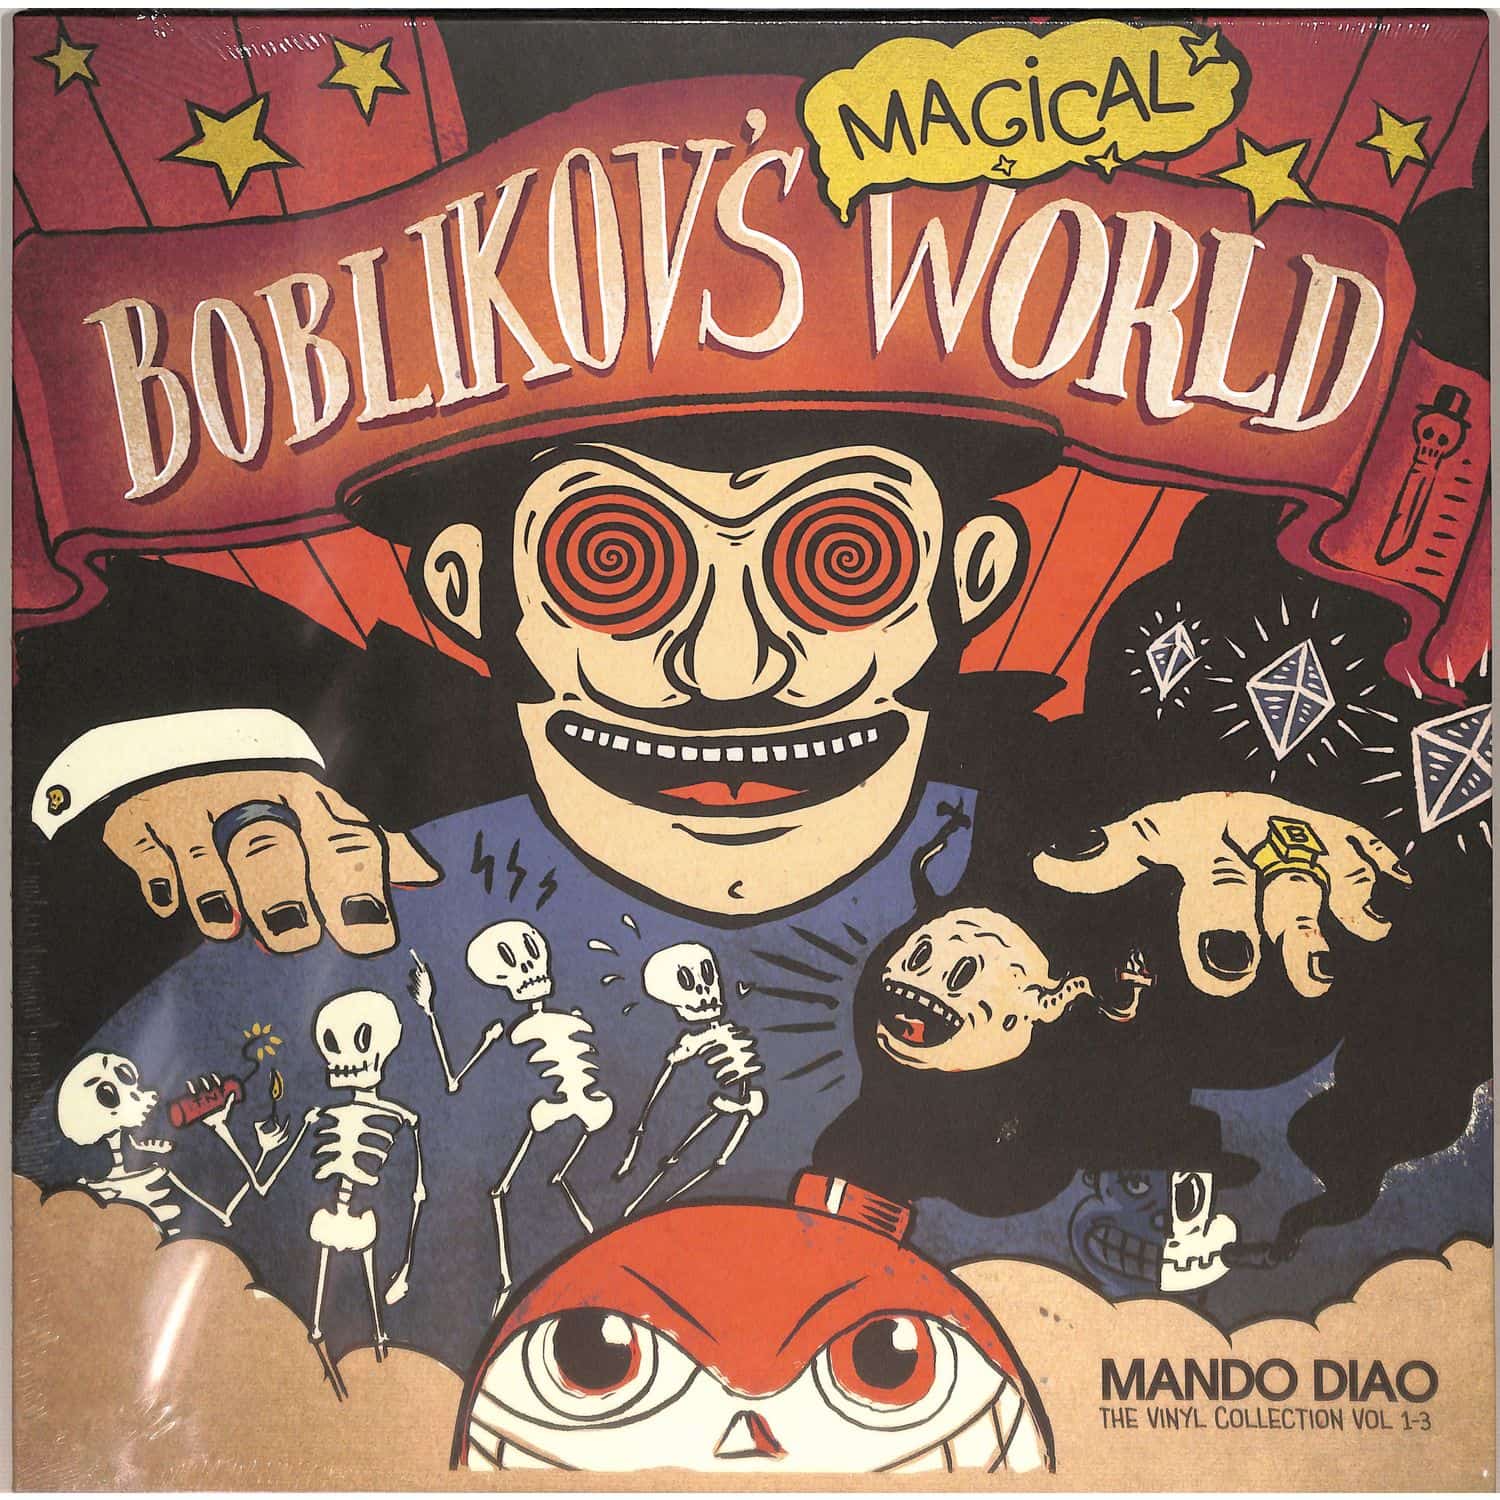 Mando Diao - BOBLIKOVS MAGICAL WORLD 